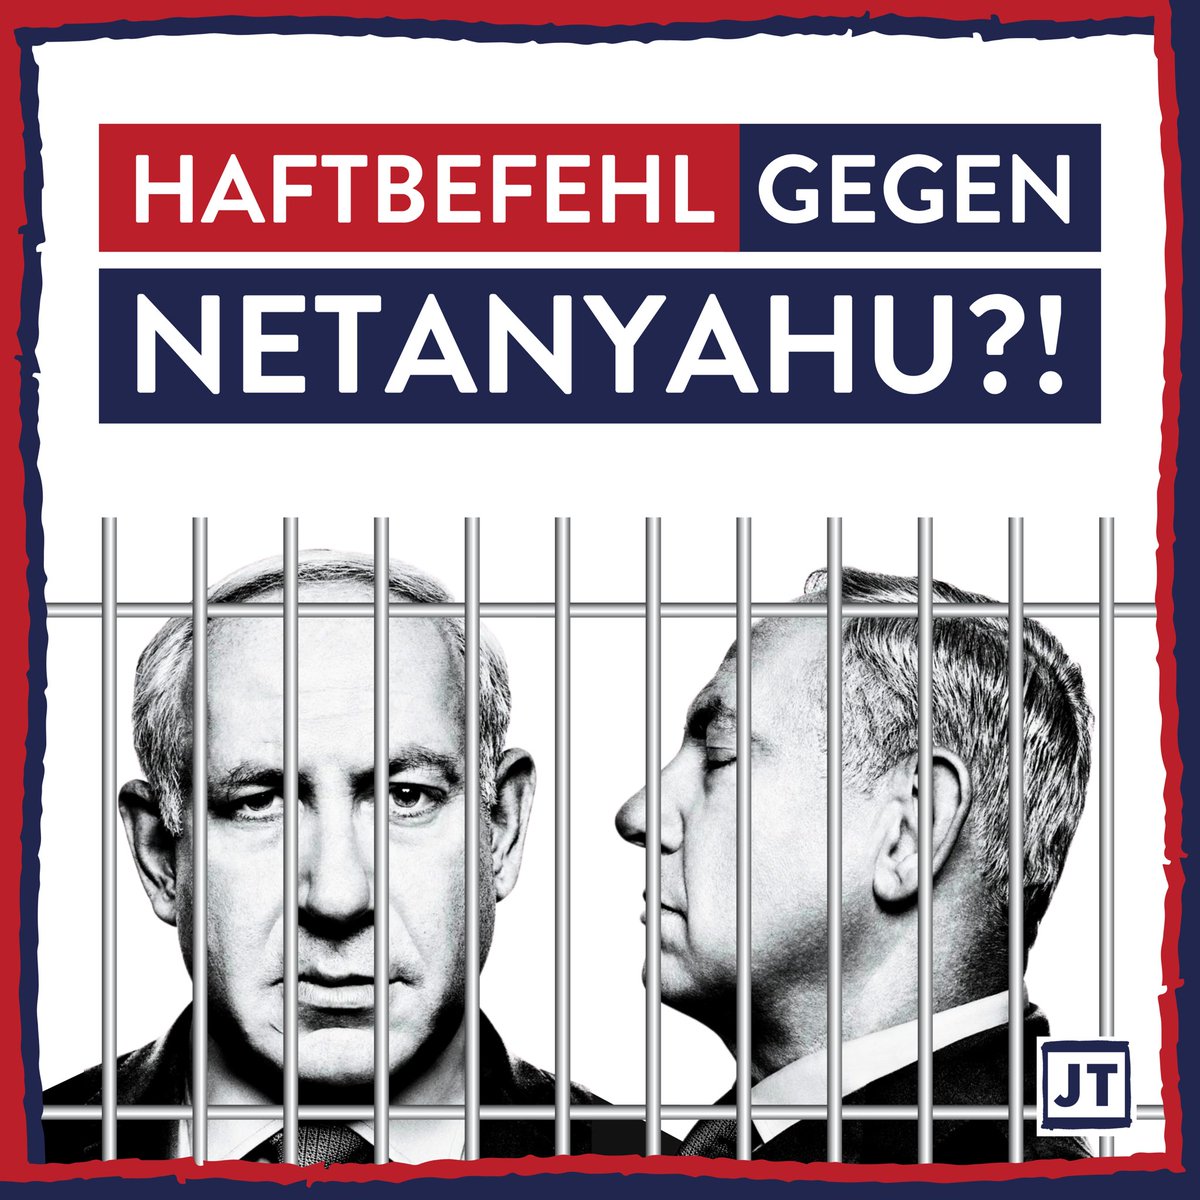 Der Internationale Strafgerichtshof wird angeblich demnächst einen Haftbefehl gegen Netanyahu ausstellen. Präsident Biden versucht dies anscheinend zu verhindern. Das berichten angesehene israelische Medien, wie die Times of Israel. 

Der Haftbefehl wäre nachvollziehbar.…